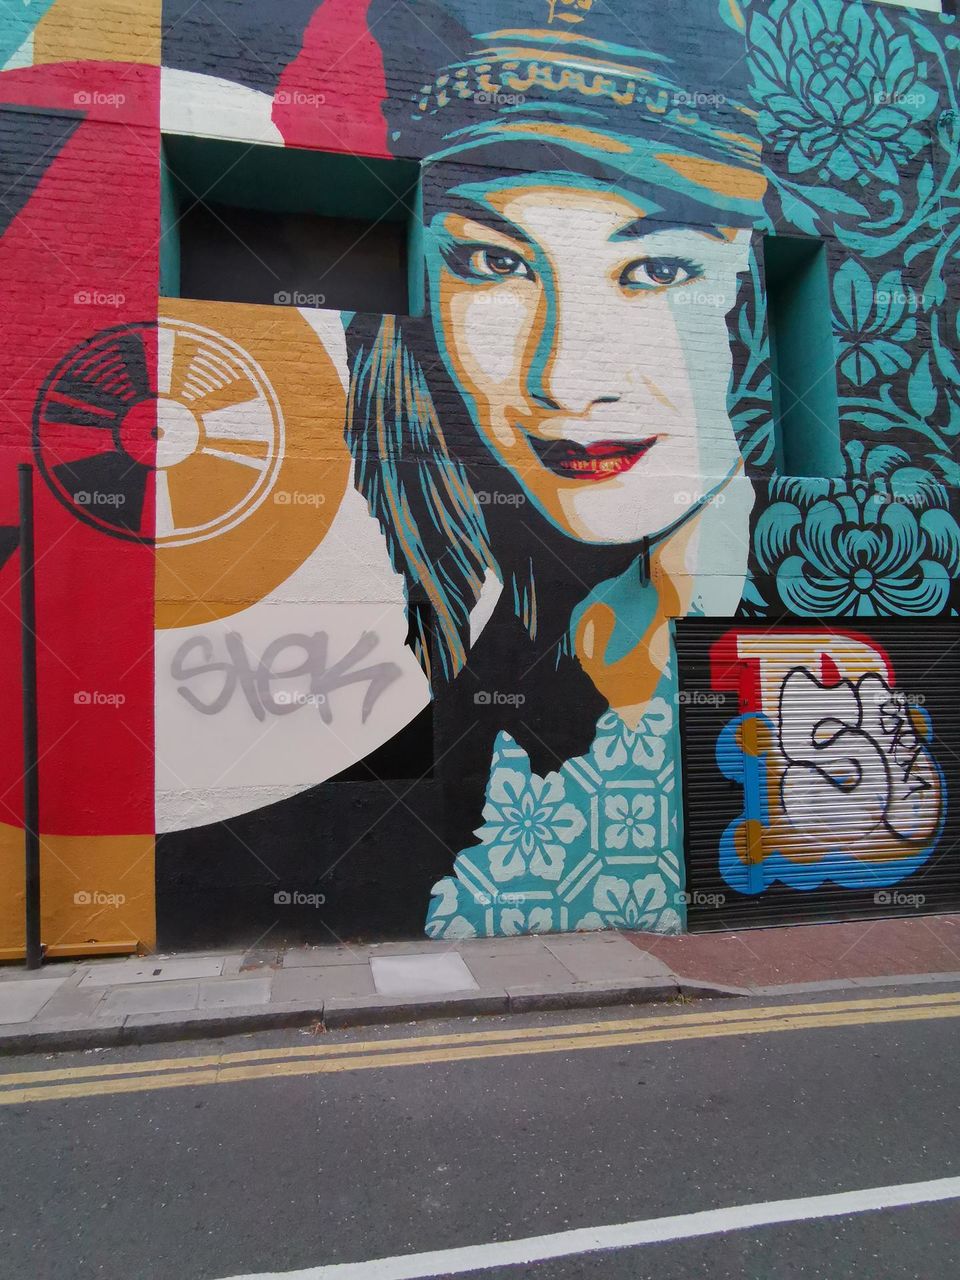 Visual street art in London. Beautiful murals.